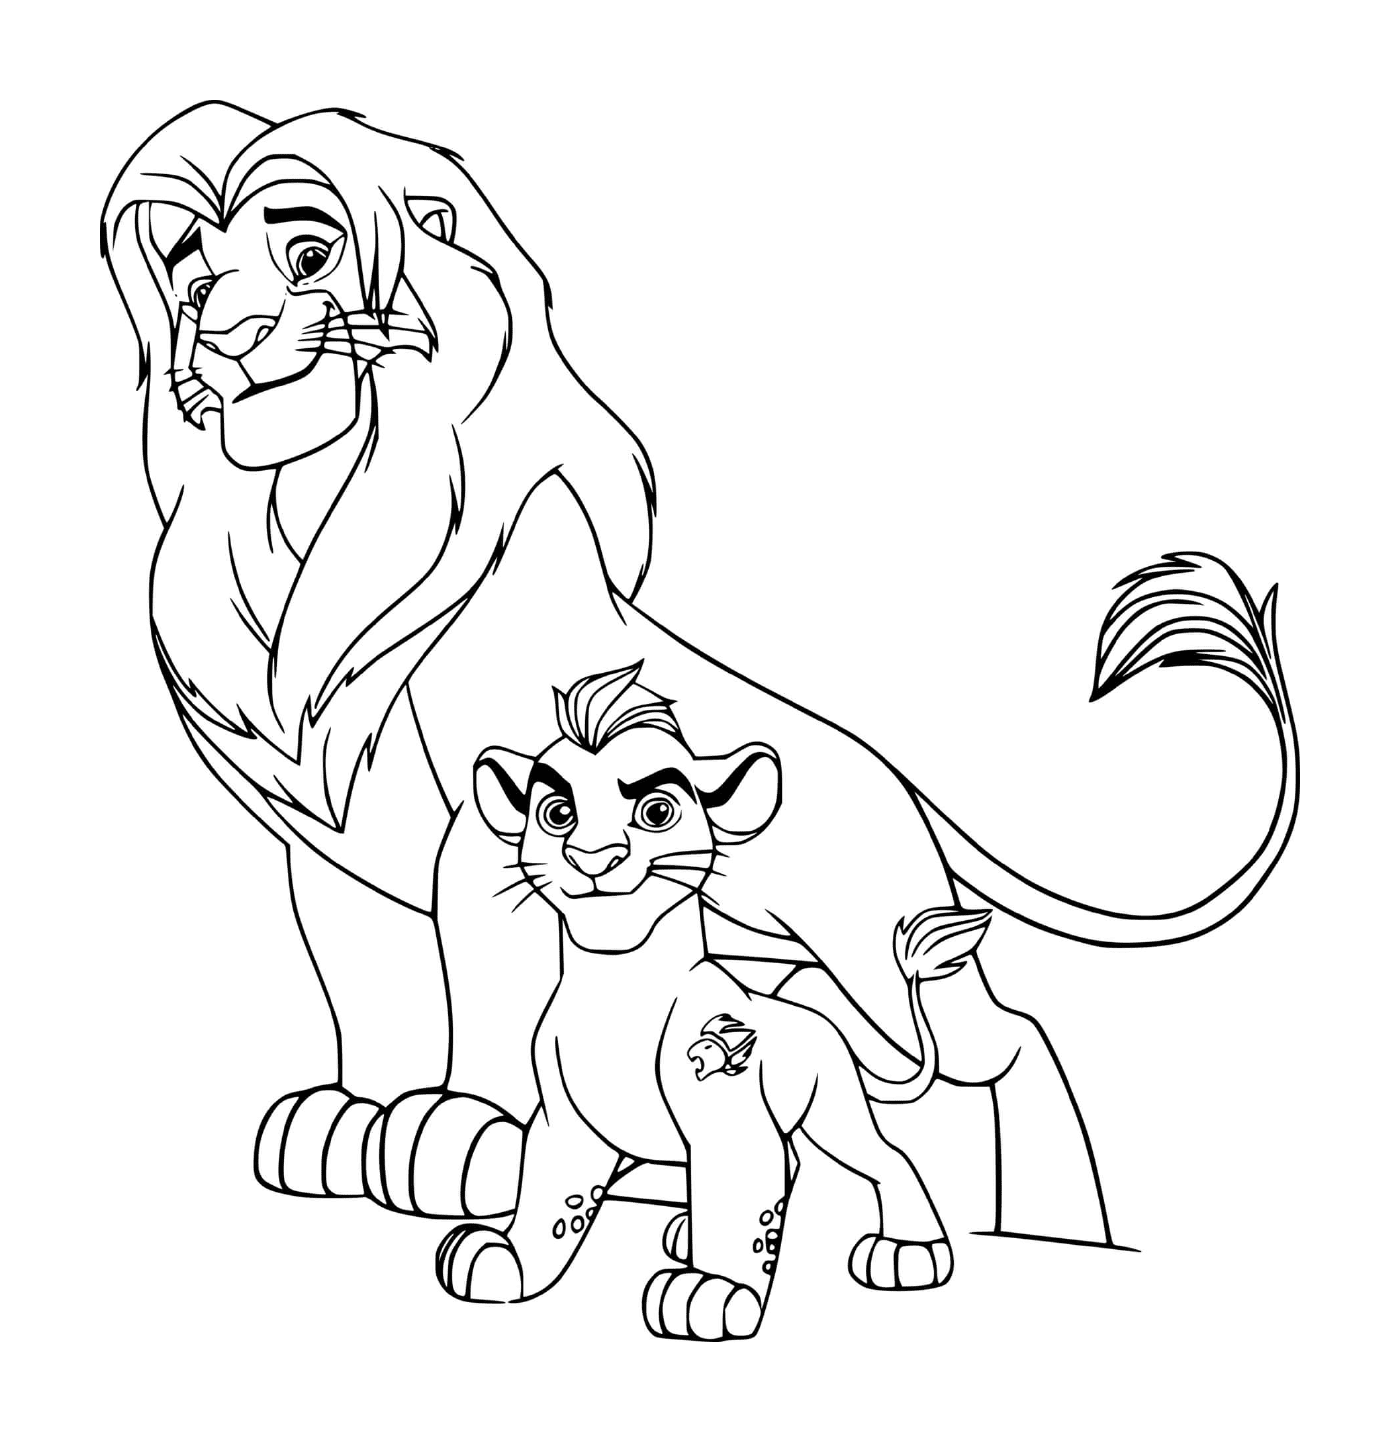  Simba and Kion, father and son 